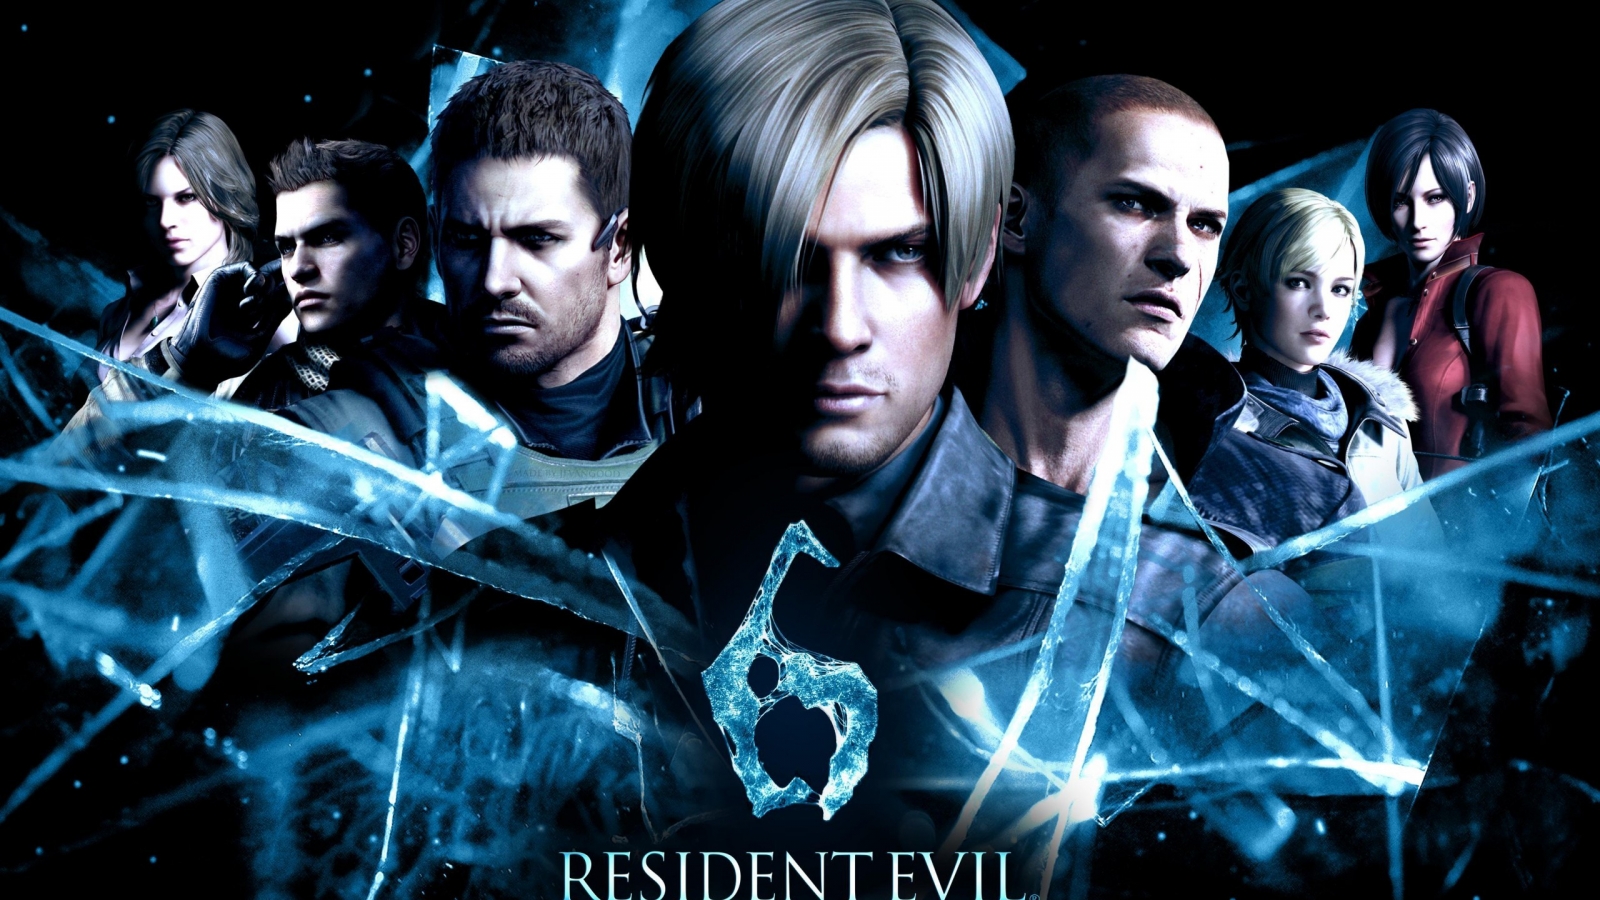 Resident Evil 6 2014 for 1600 x 900 HDTV resolution